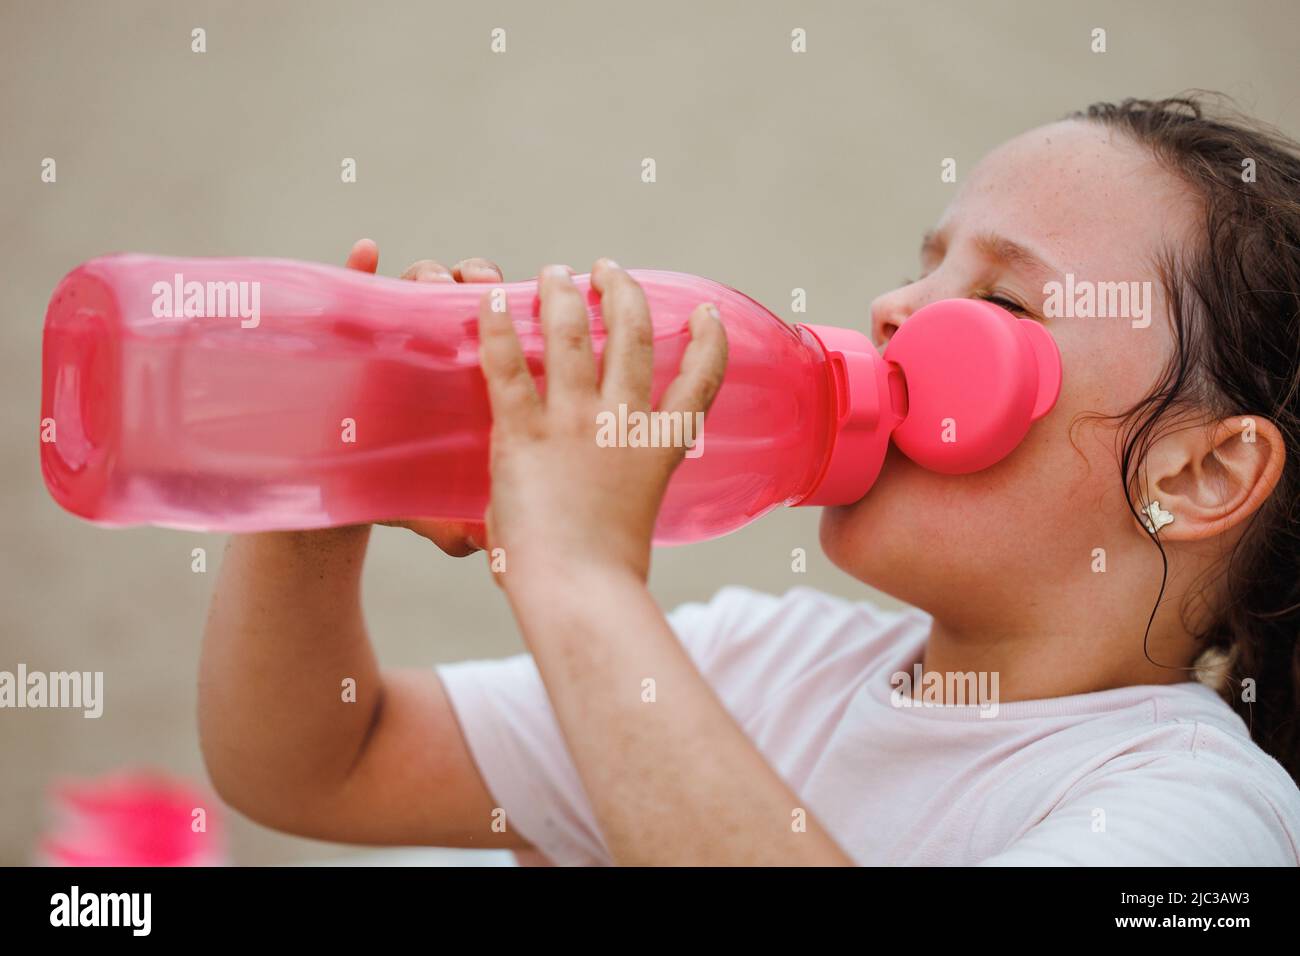 Vue latérale d'une petite fille assoiffée avec de longs cheveux foncés portant un T-shirt blanc, de l'eau potable de bouteille en plastique rose. Banque D'Images